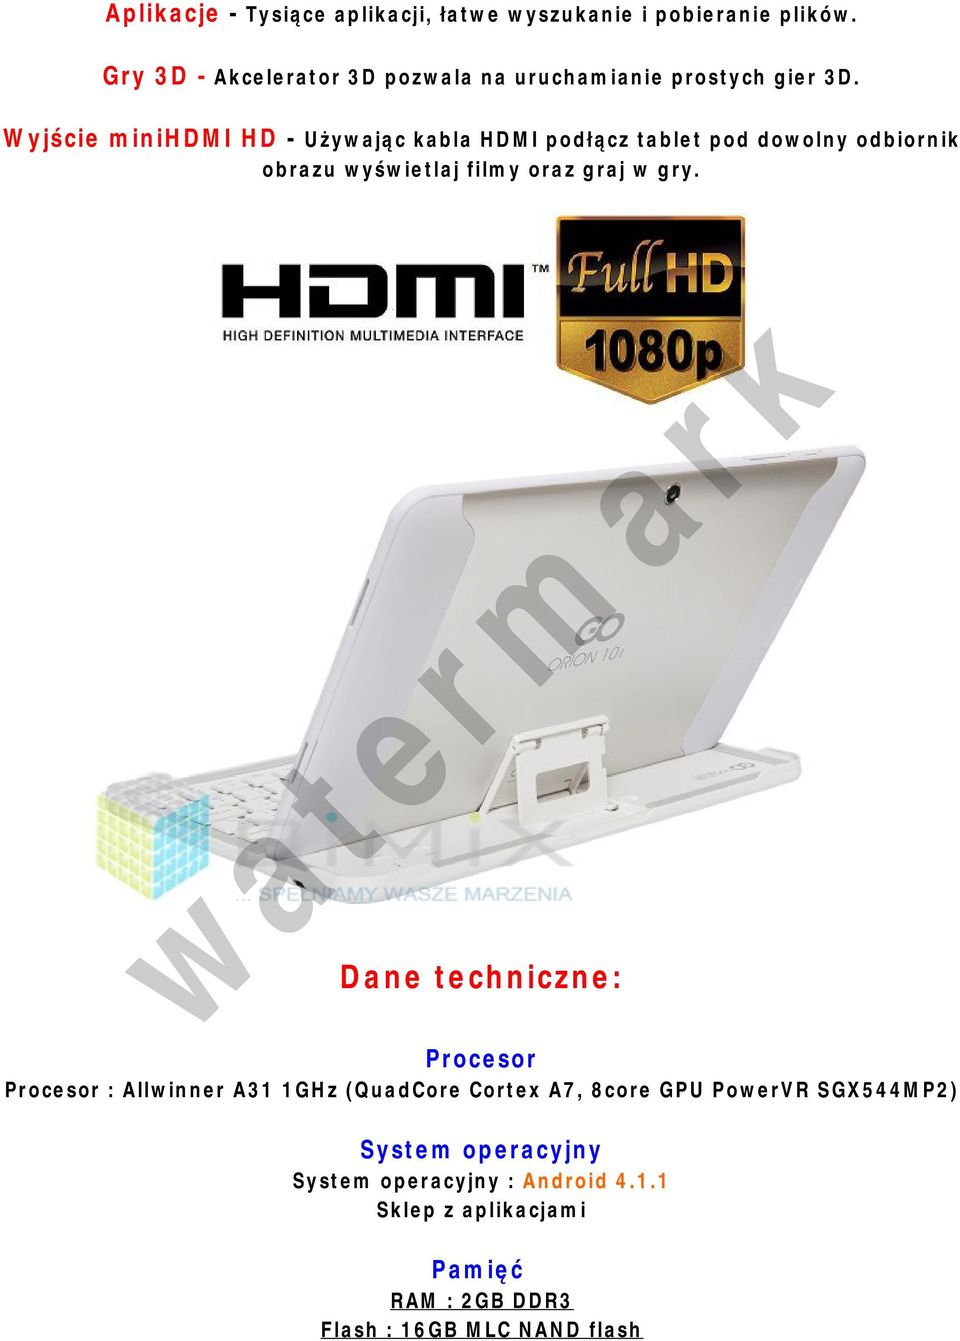 Wyjście minihdmi HD - Używając kabla HDMI podłącz tablet pod dowolny odbiornik obrazu wyświetlaj filmy oraz graj w gry.